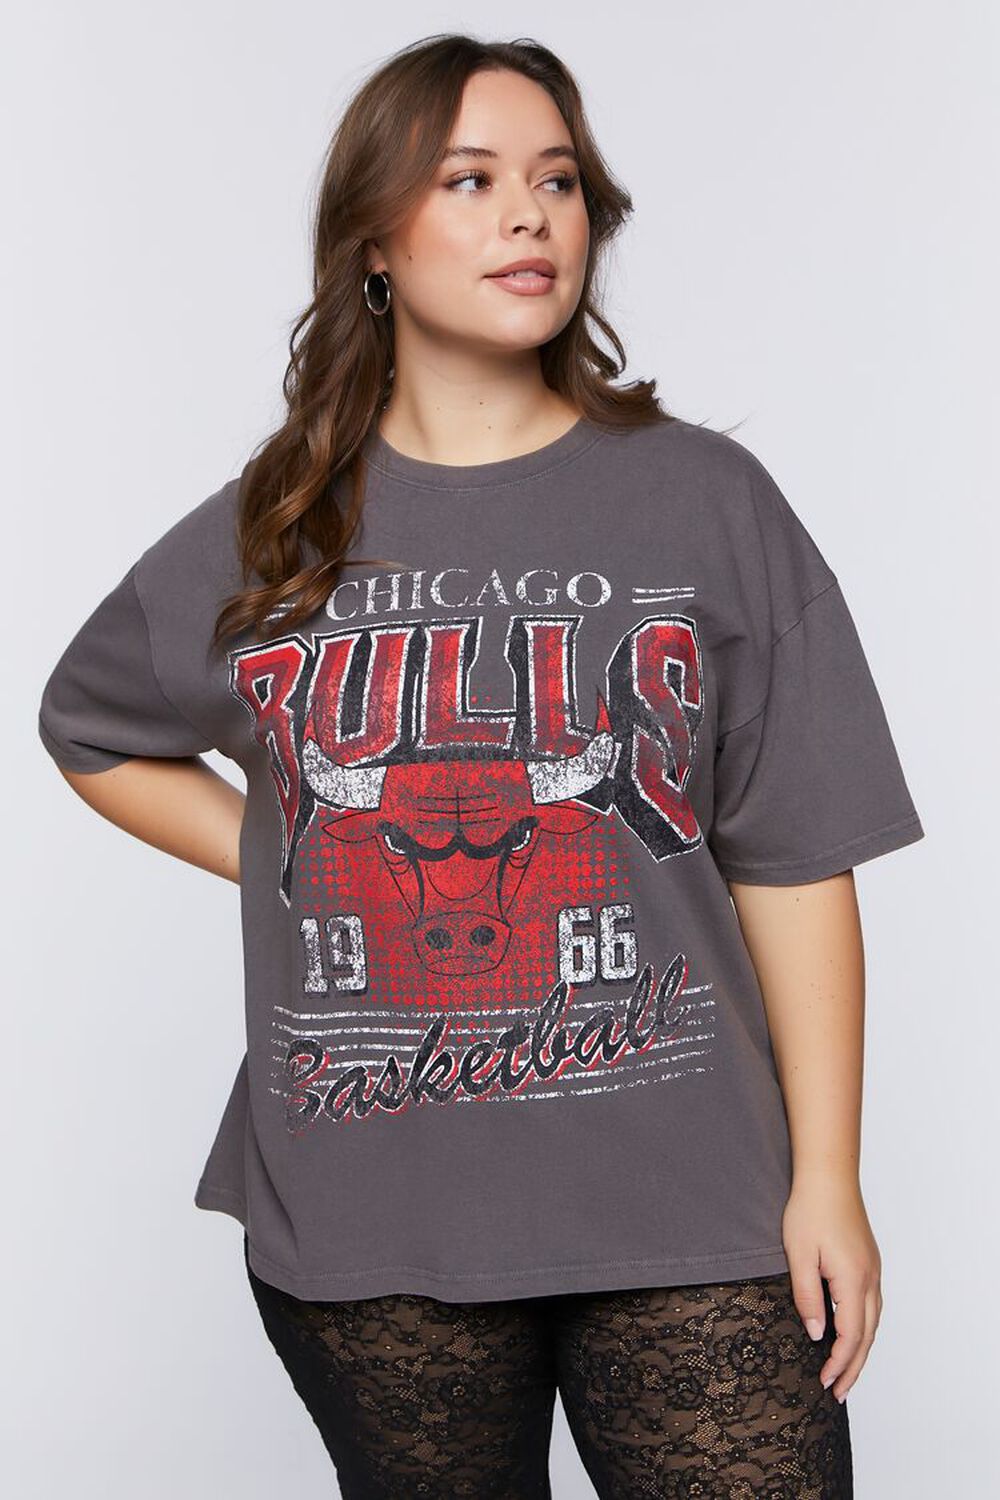 target bulls jersey